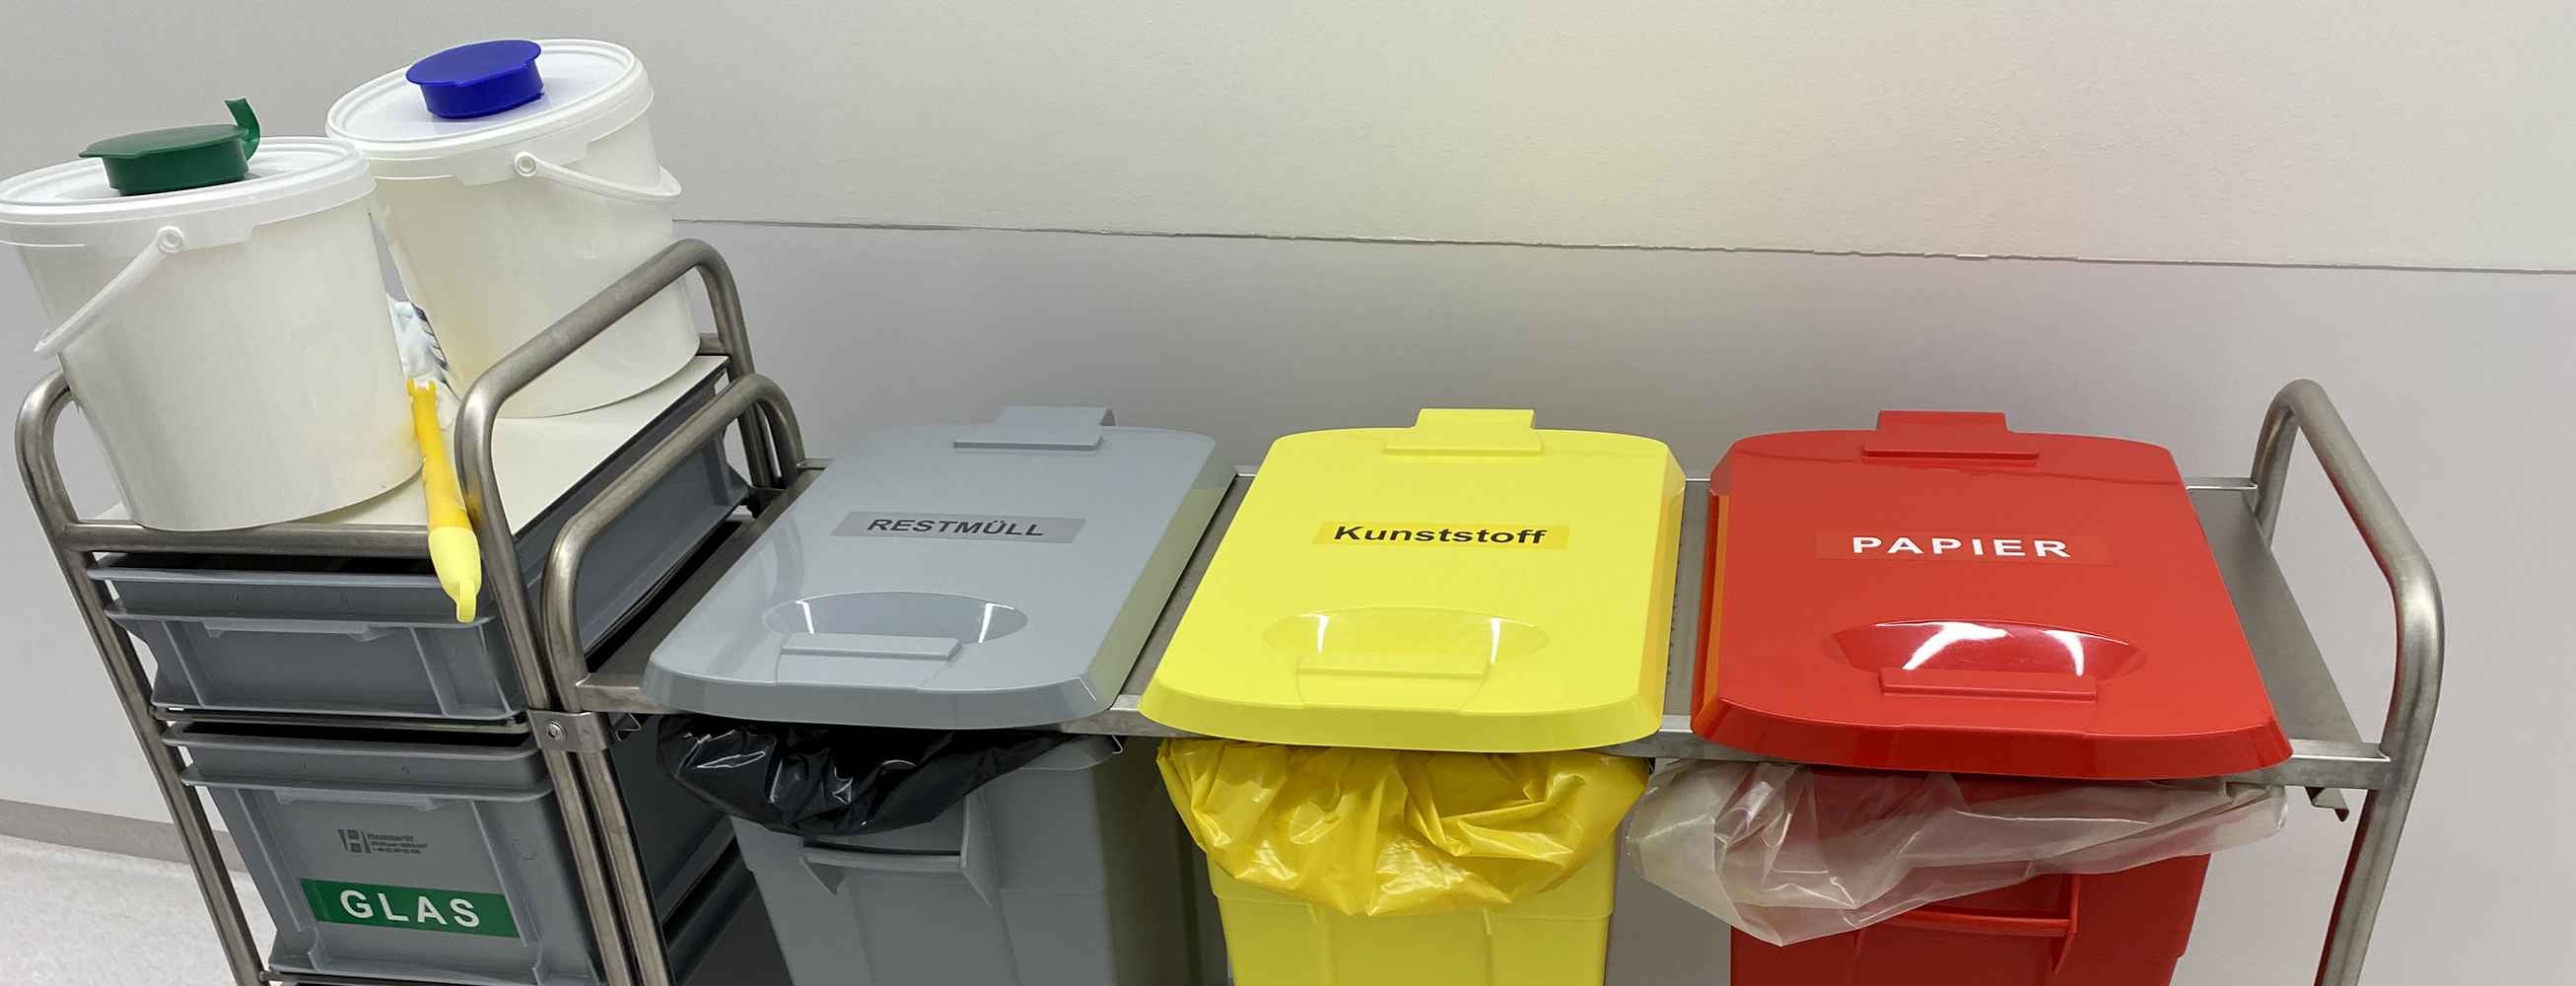 Das Bild zeigt Behälter zur Mülltrennung im Krankenhaus.